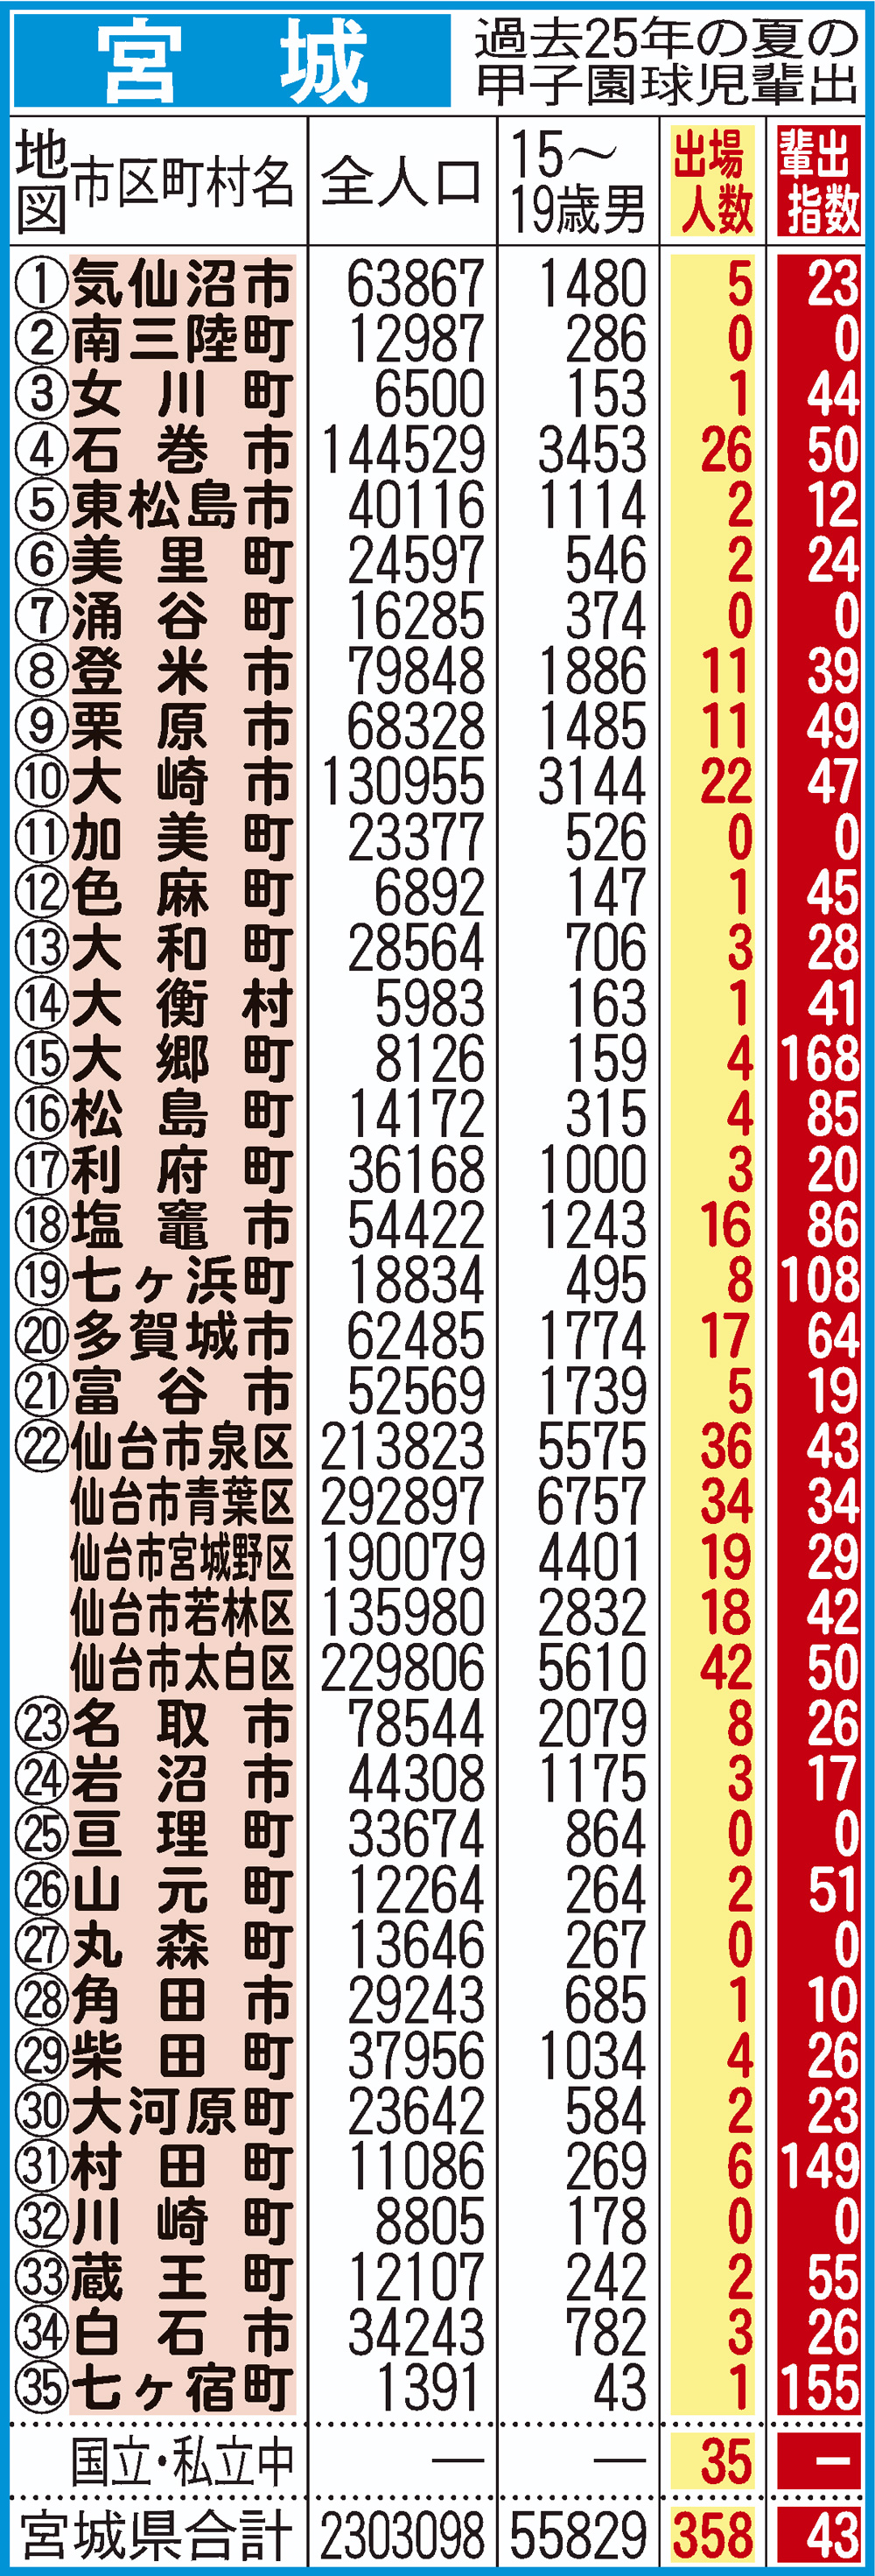 過去25年間における宮城県地域別の甲子園輩出指数